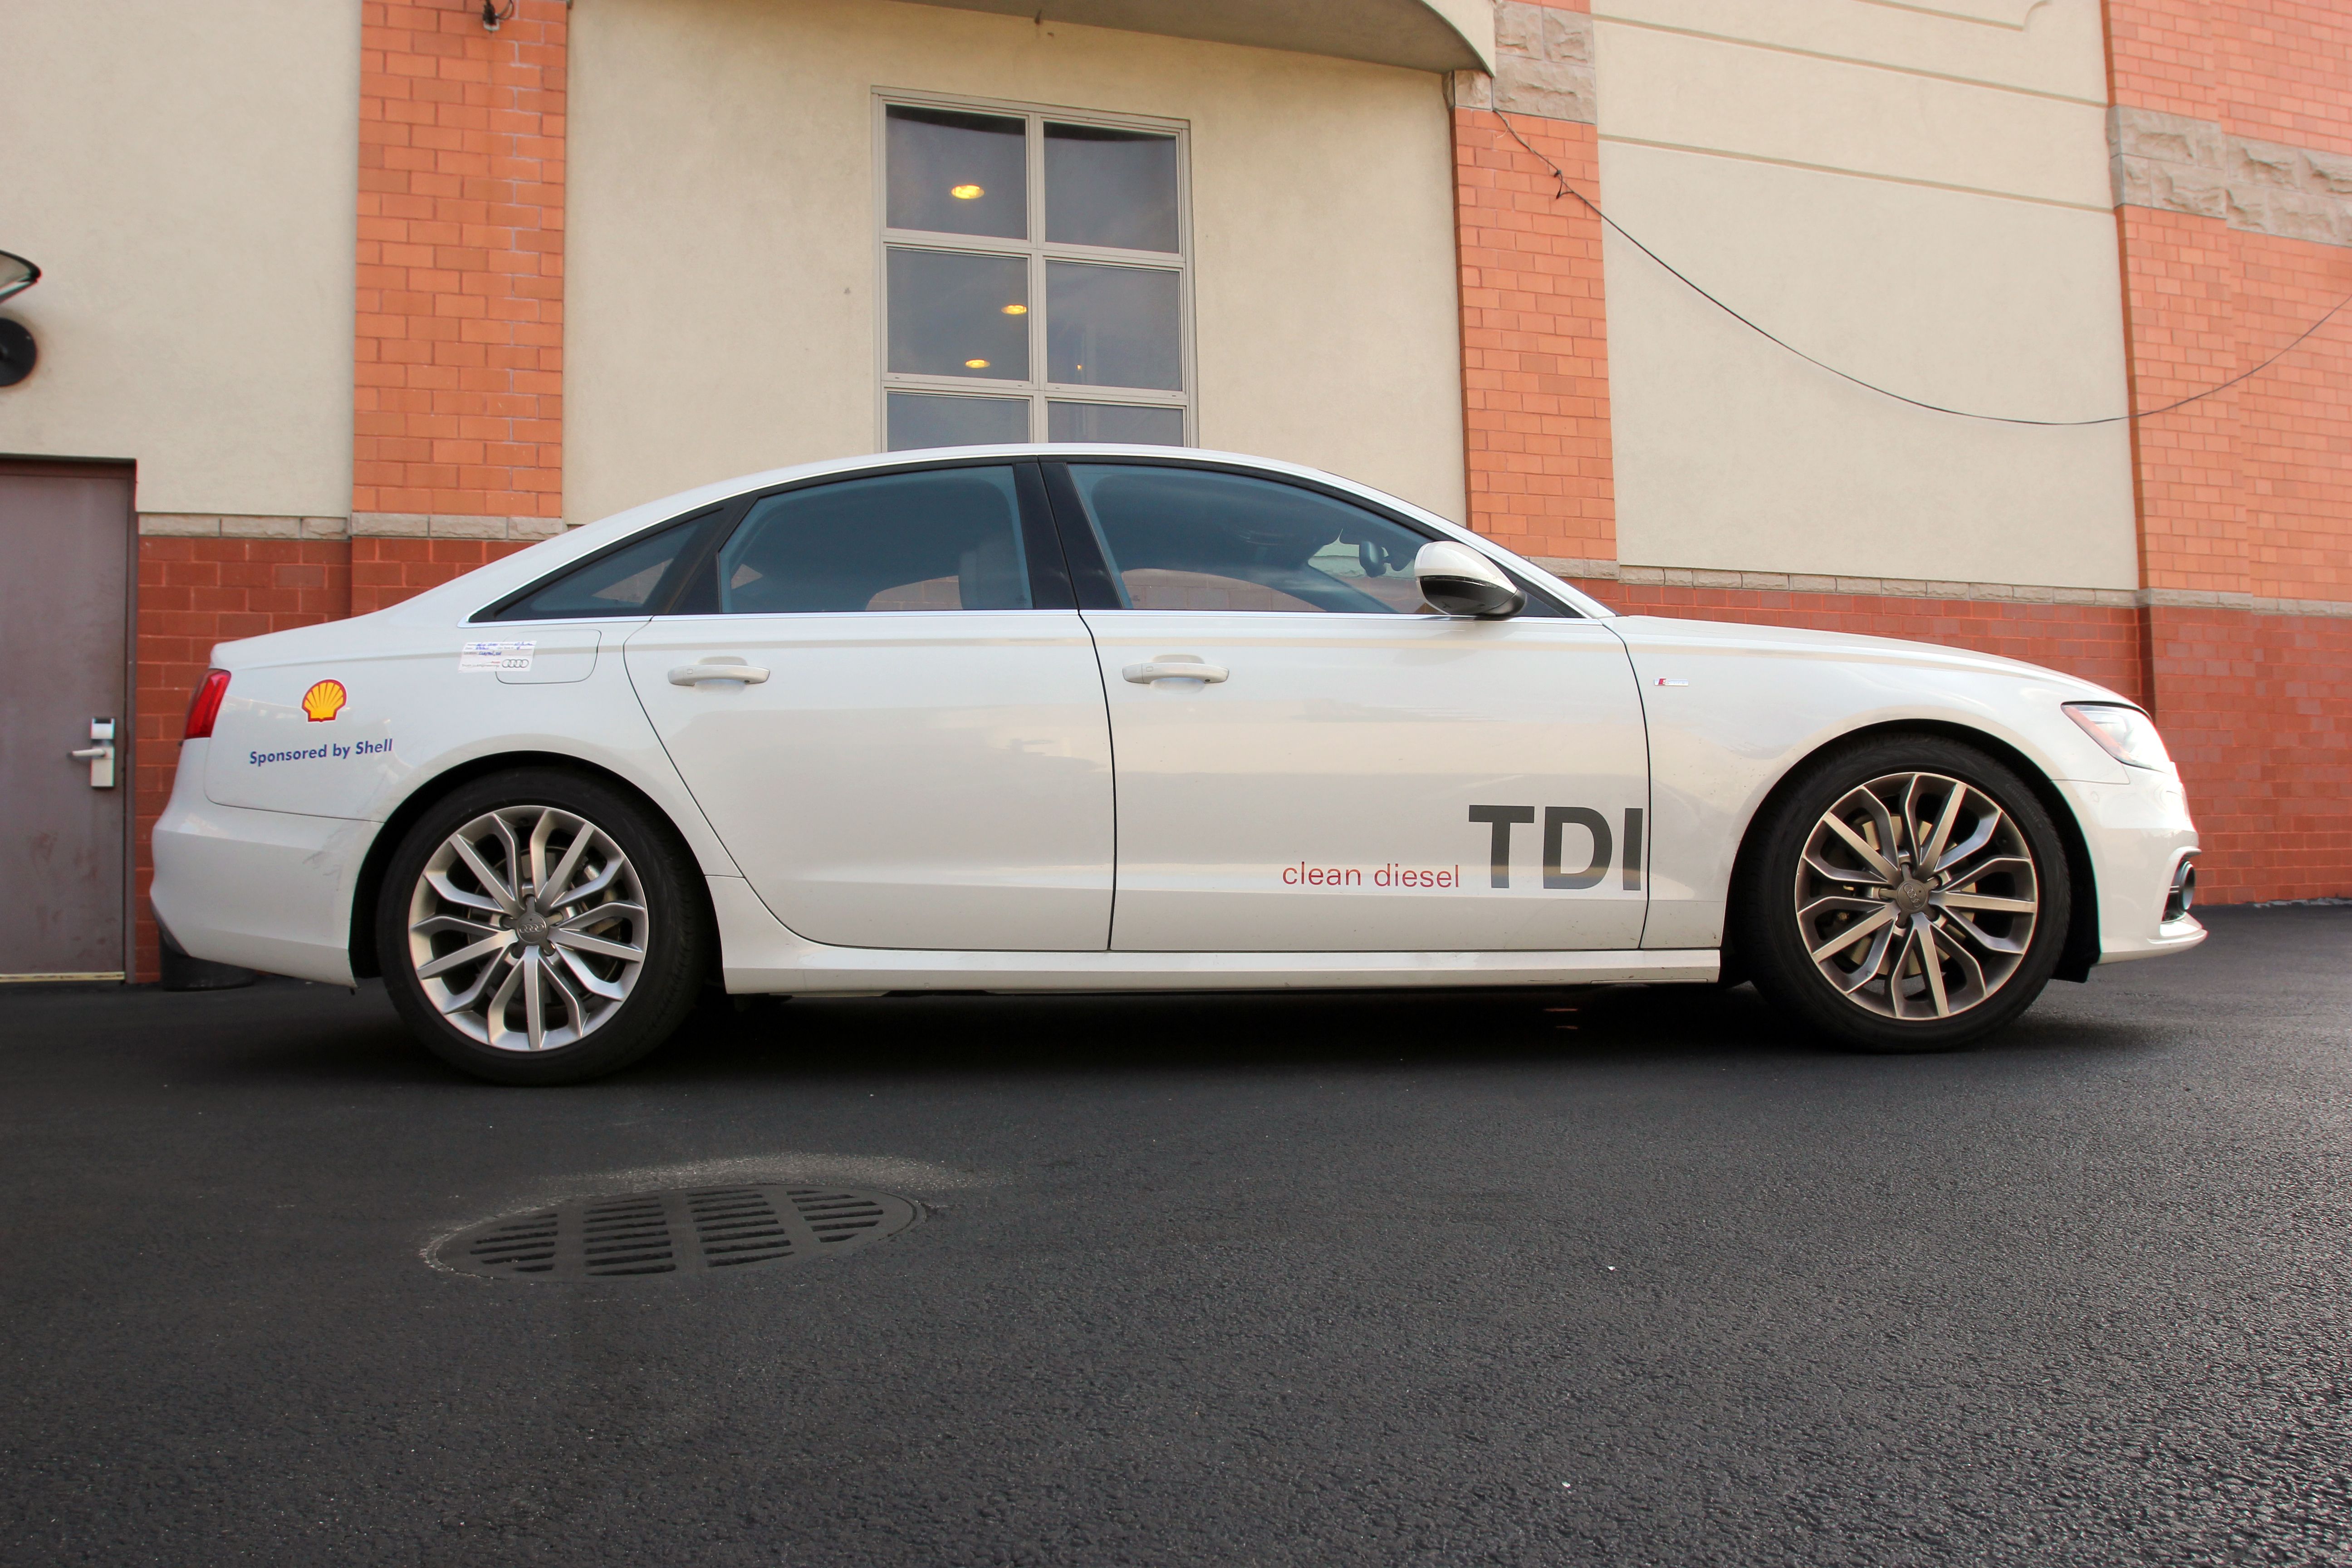 2014 Audi A6 TDI - Driven